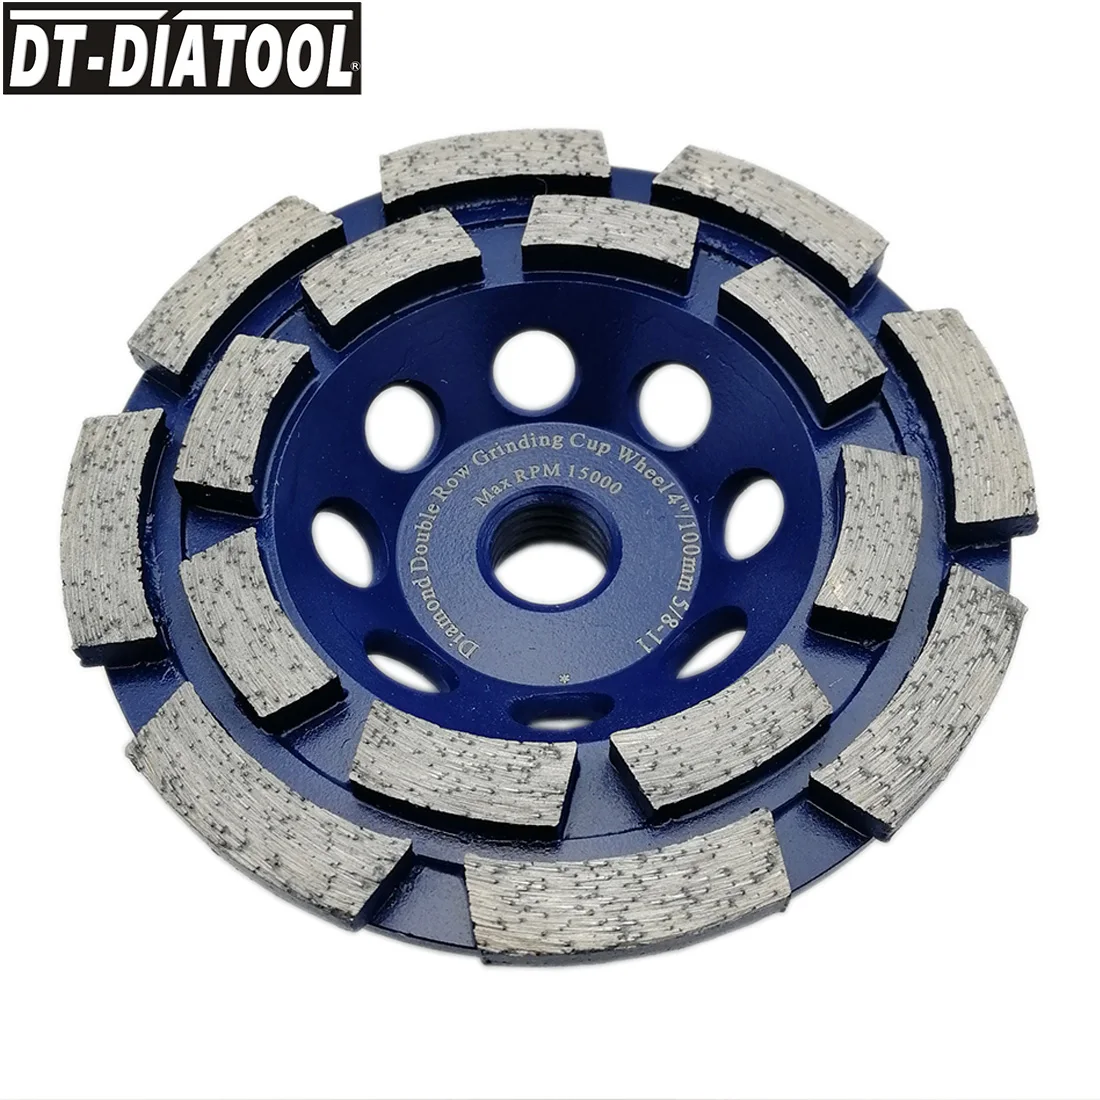 DT-DIATOOL 1 блок 4 дюймов/100 мм Алмазный двухрядный чашевидный шлифовальный круг для бетонного кирпича твердый камень гранит мрамор 5/8-11 нить